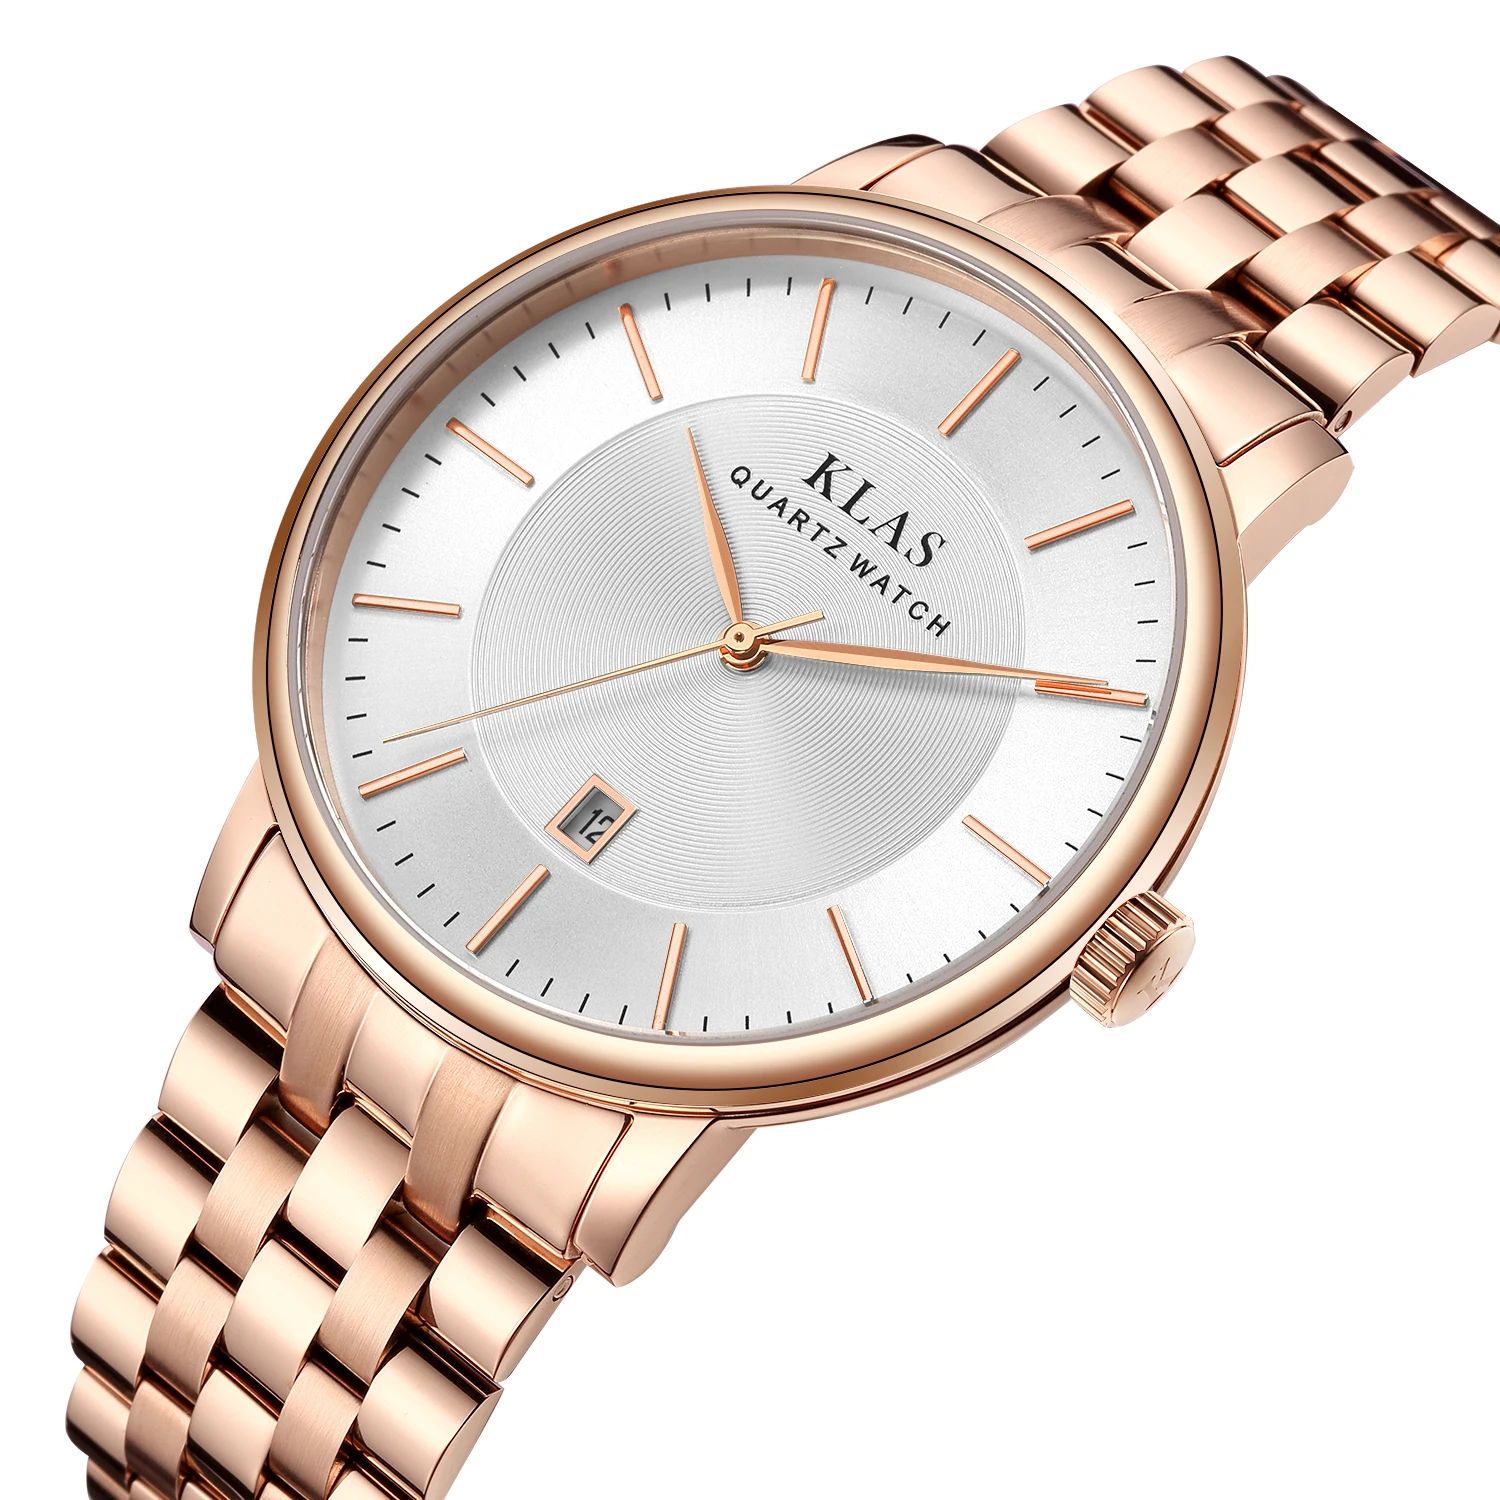 Новые роскошные повседневные часы мужские наручные бренд под заказ оптовая цена